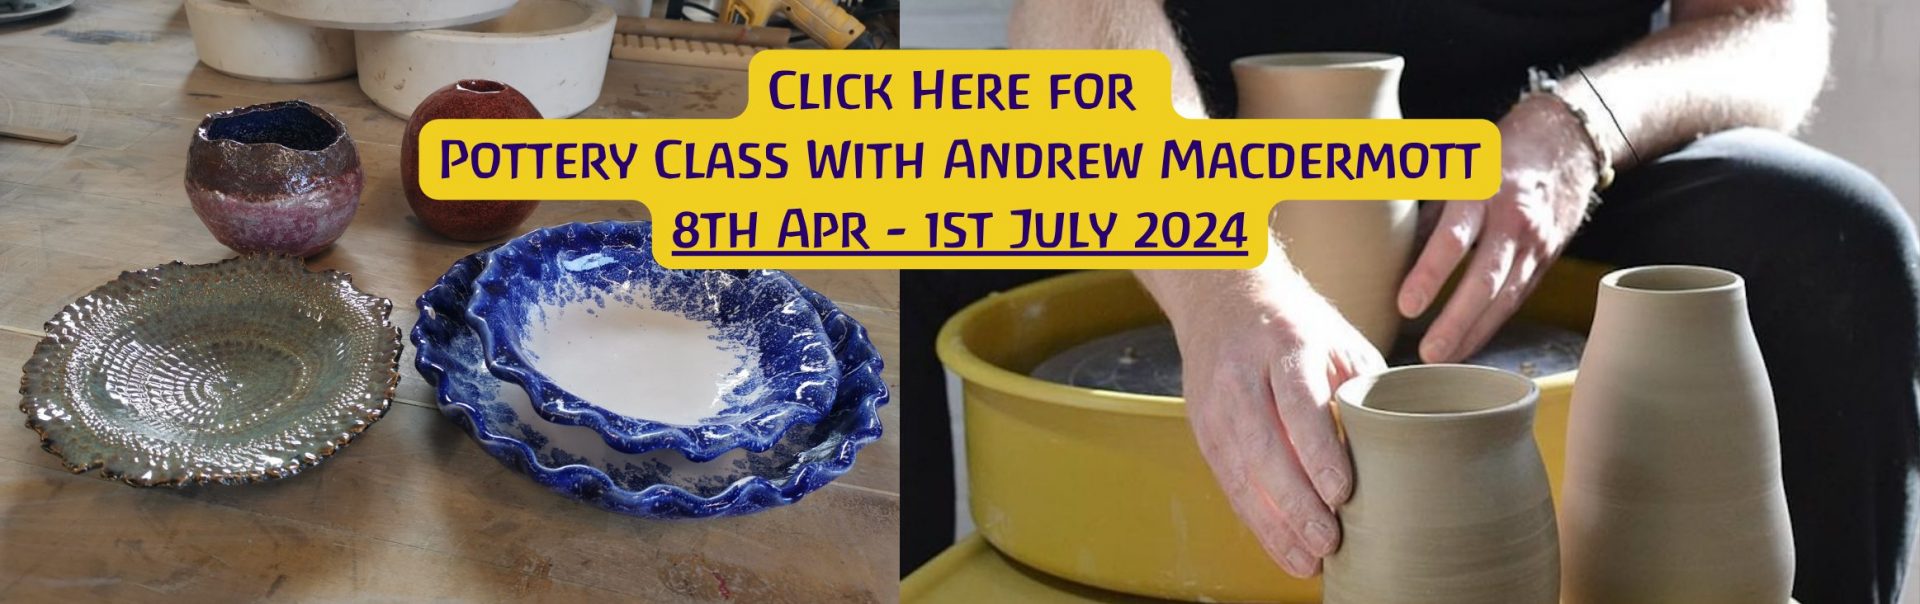 Andrew Macdermott ceramic course Apr - Jul